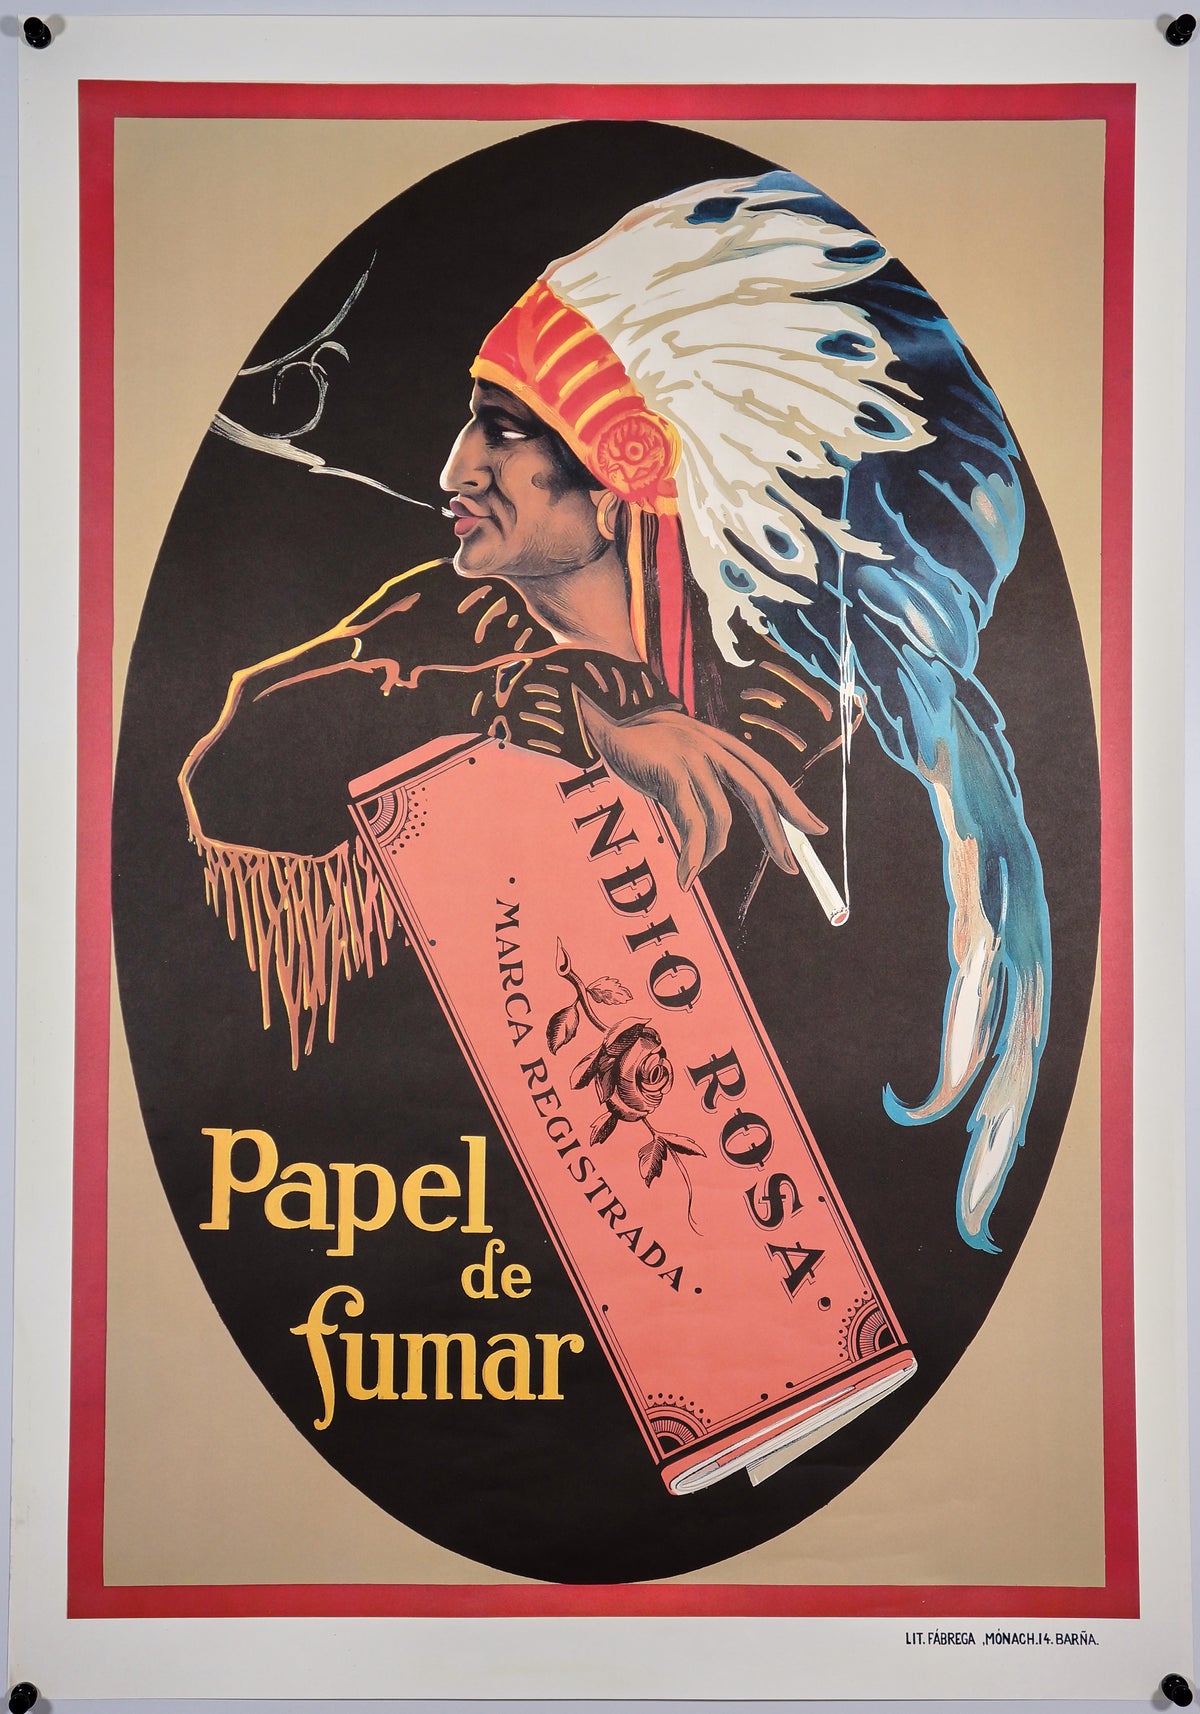 Papel de Fumar - Authentic Vintage Poster